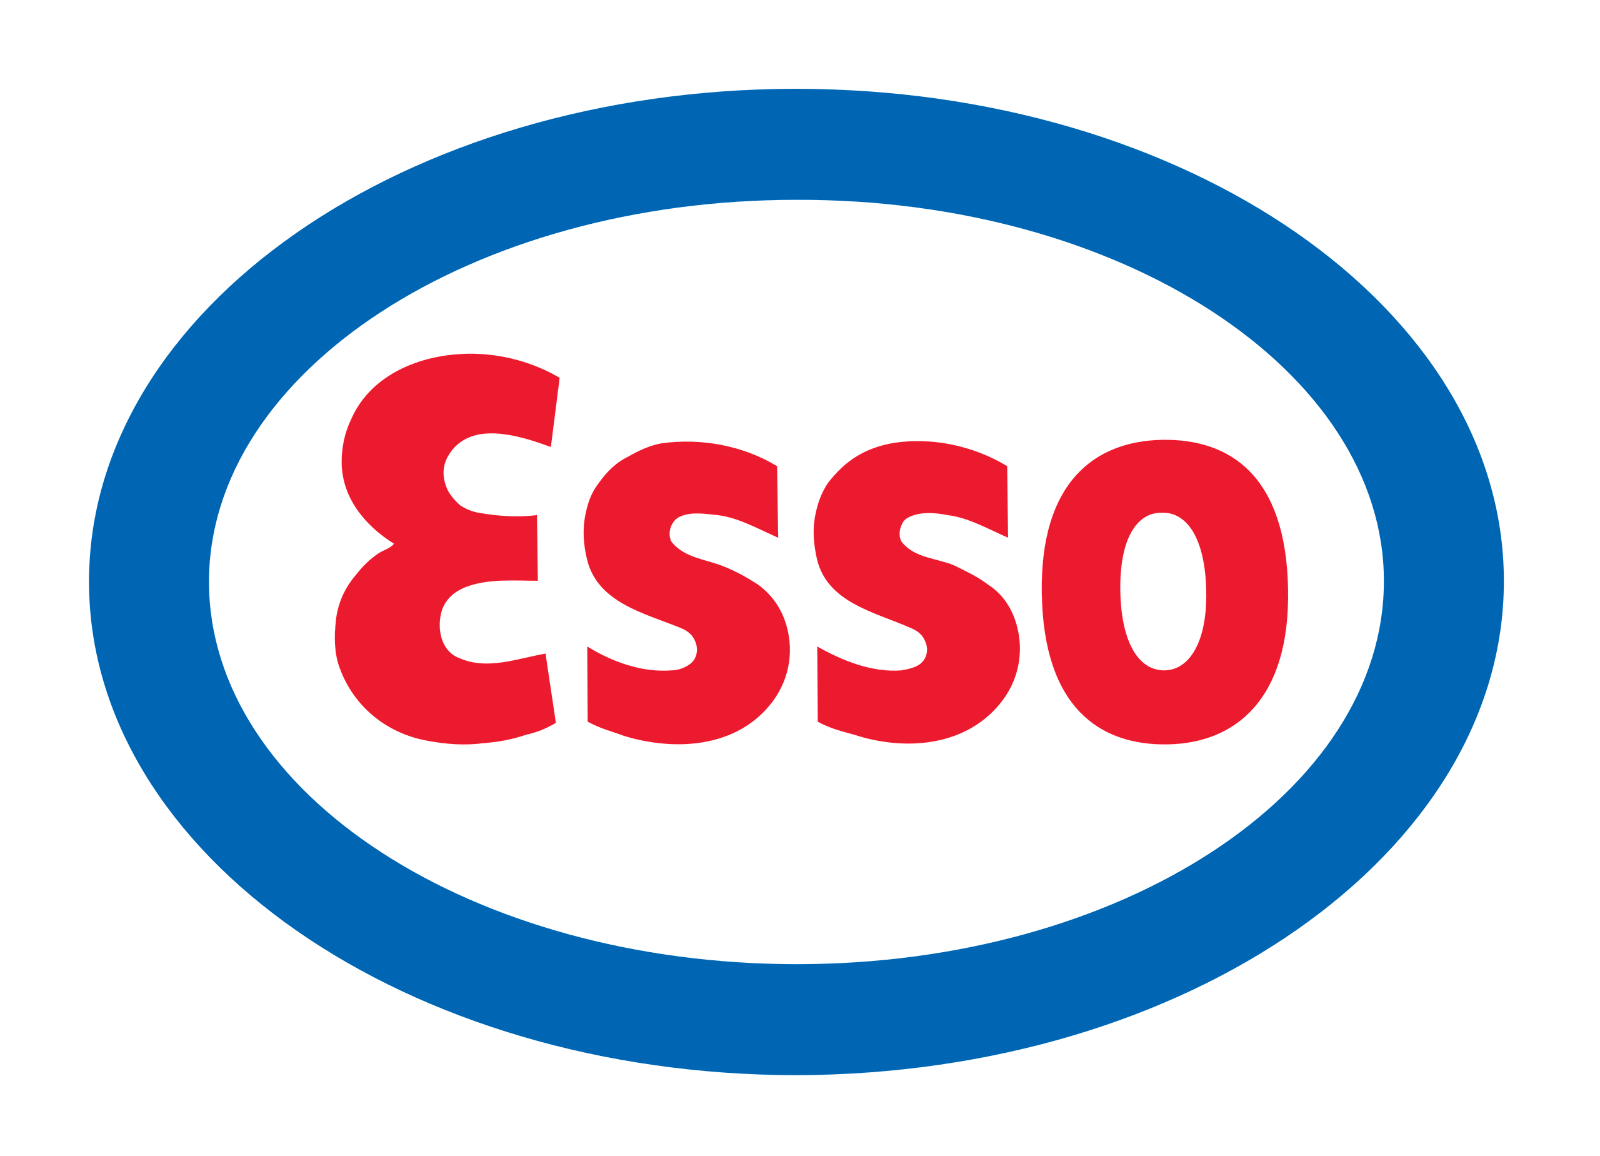 Esso Brand Image